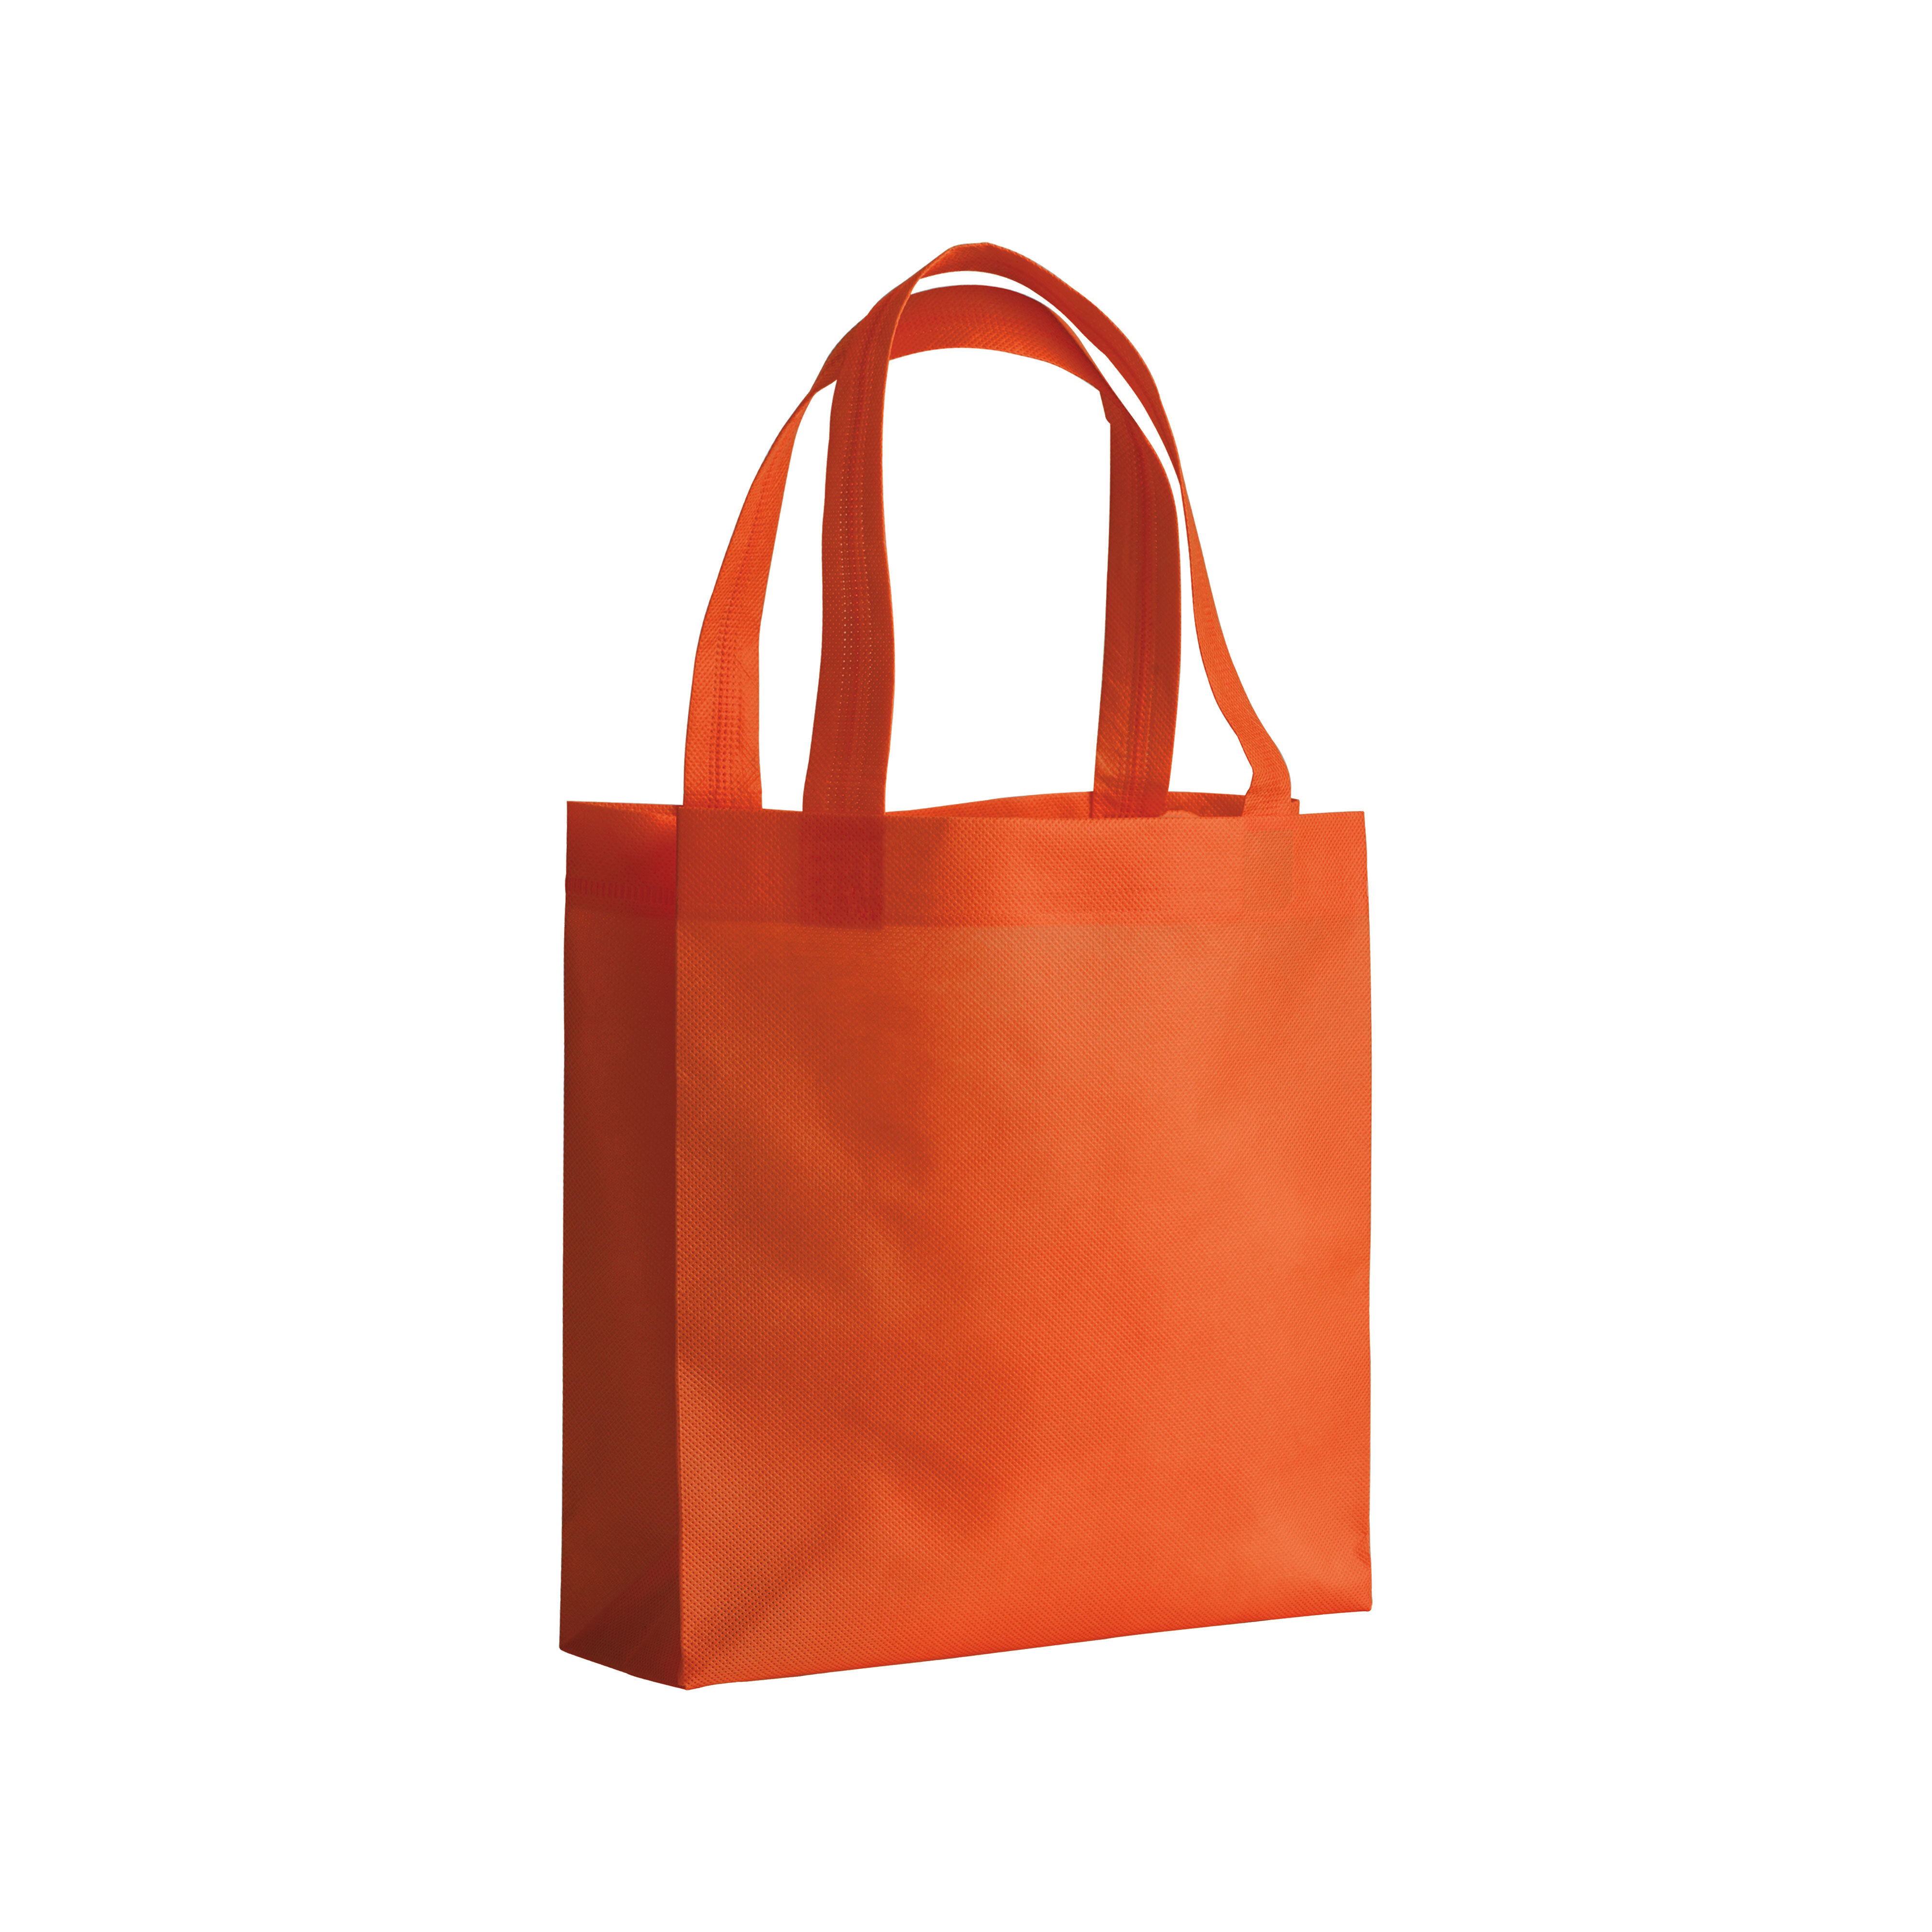 Tote Bag in tela, per decorazioni fai-da-te, dimensioni: 34 x 39